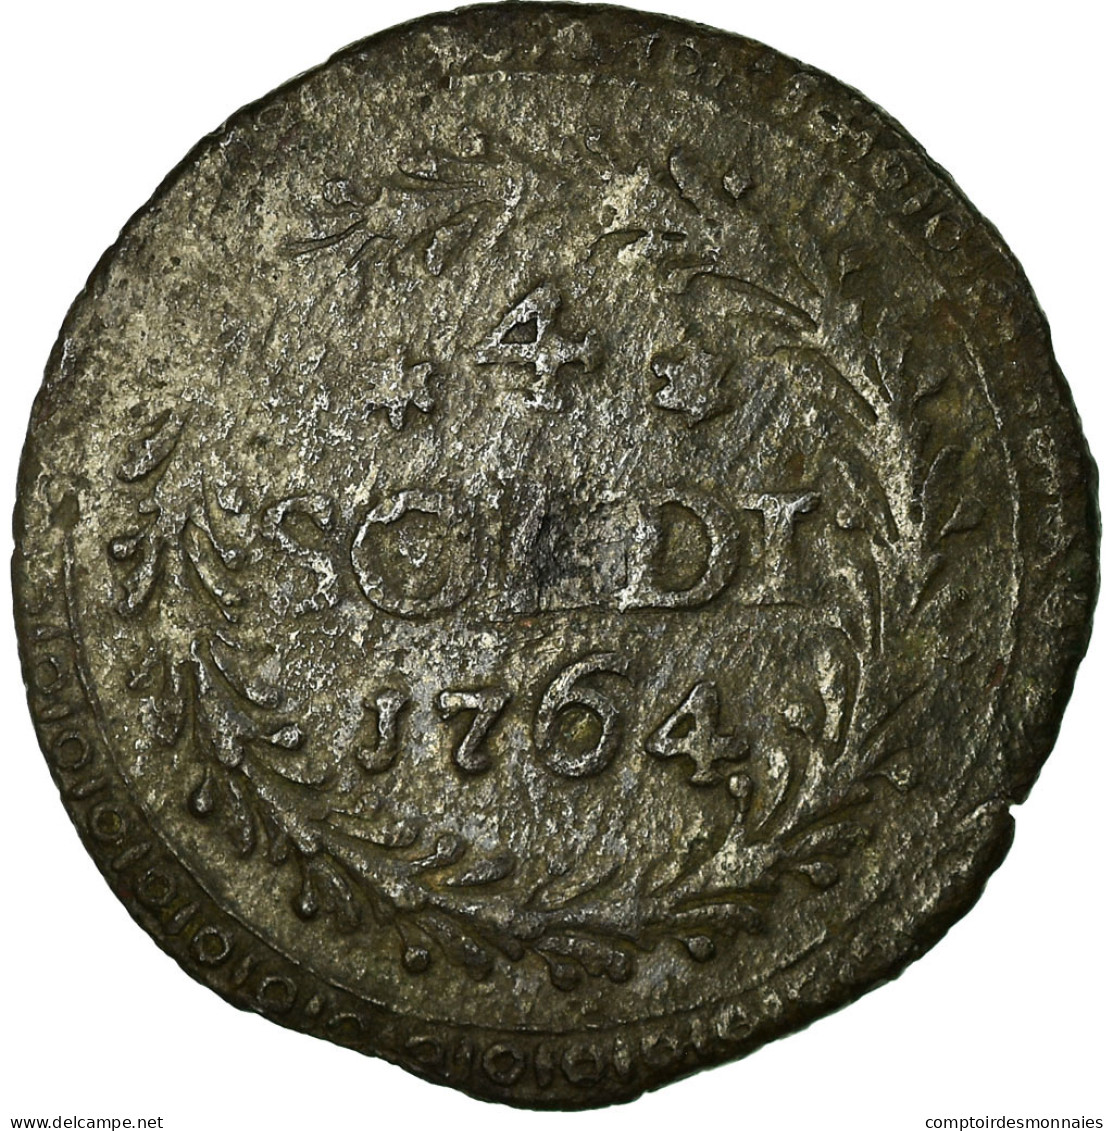 Monnaie, États Italiens, CORSICA, General Pasquale Paoli, 4 Soldi, 1764 - Corsica (1736-1768)